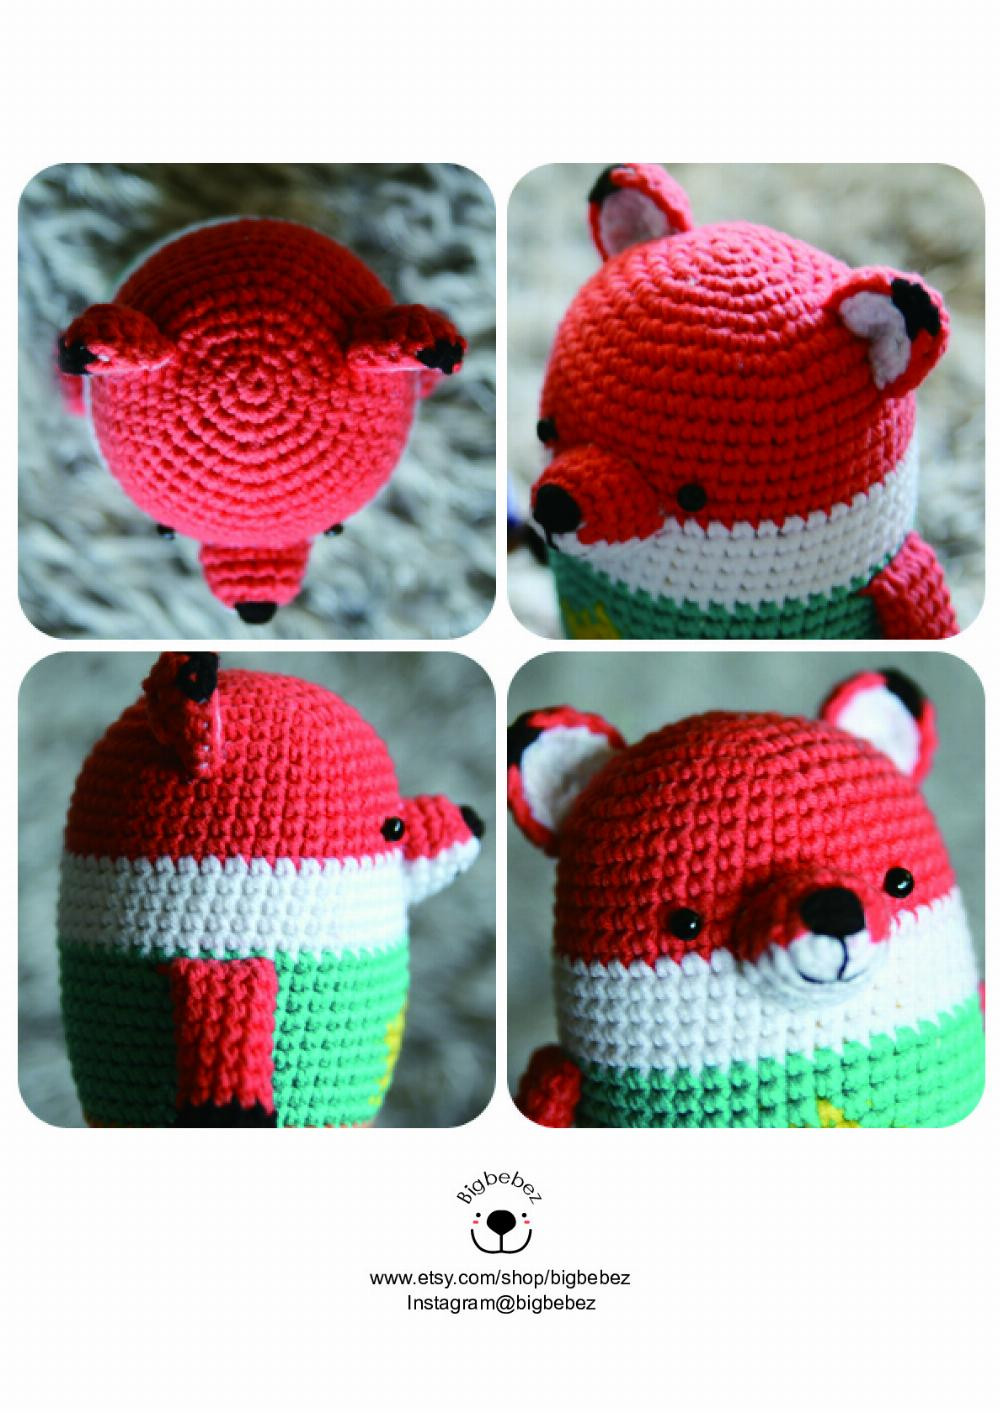 MINIMALS mini + animals FOX crochet pattern